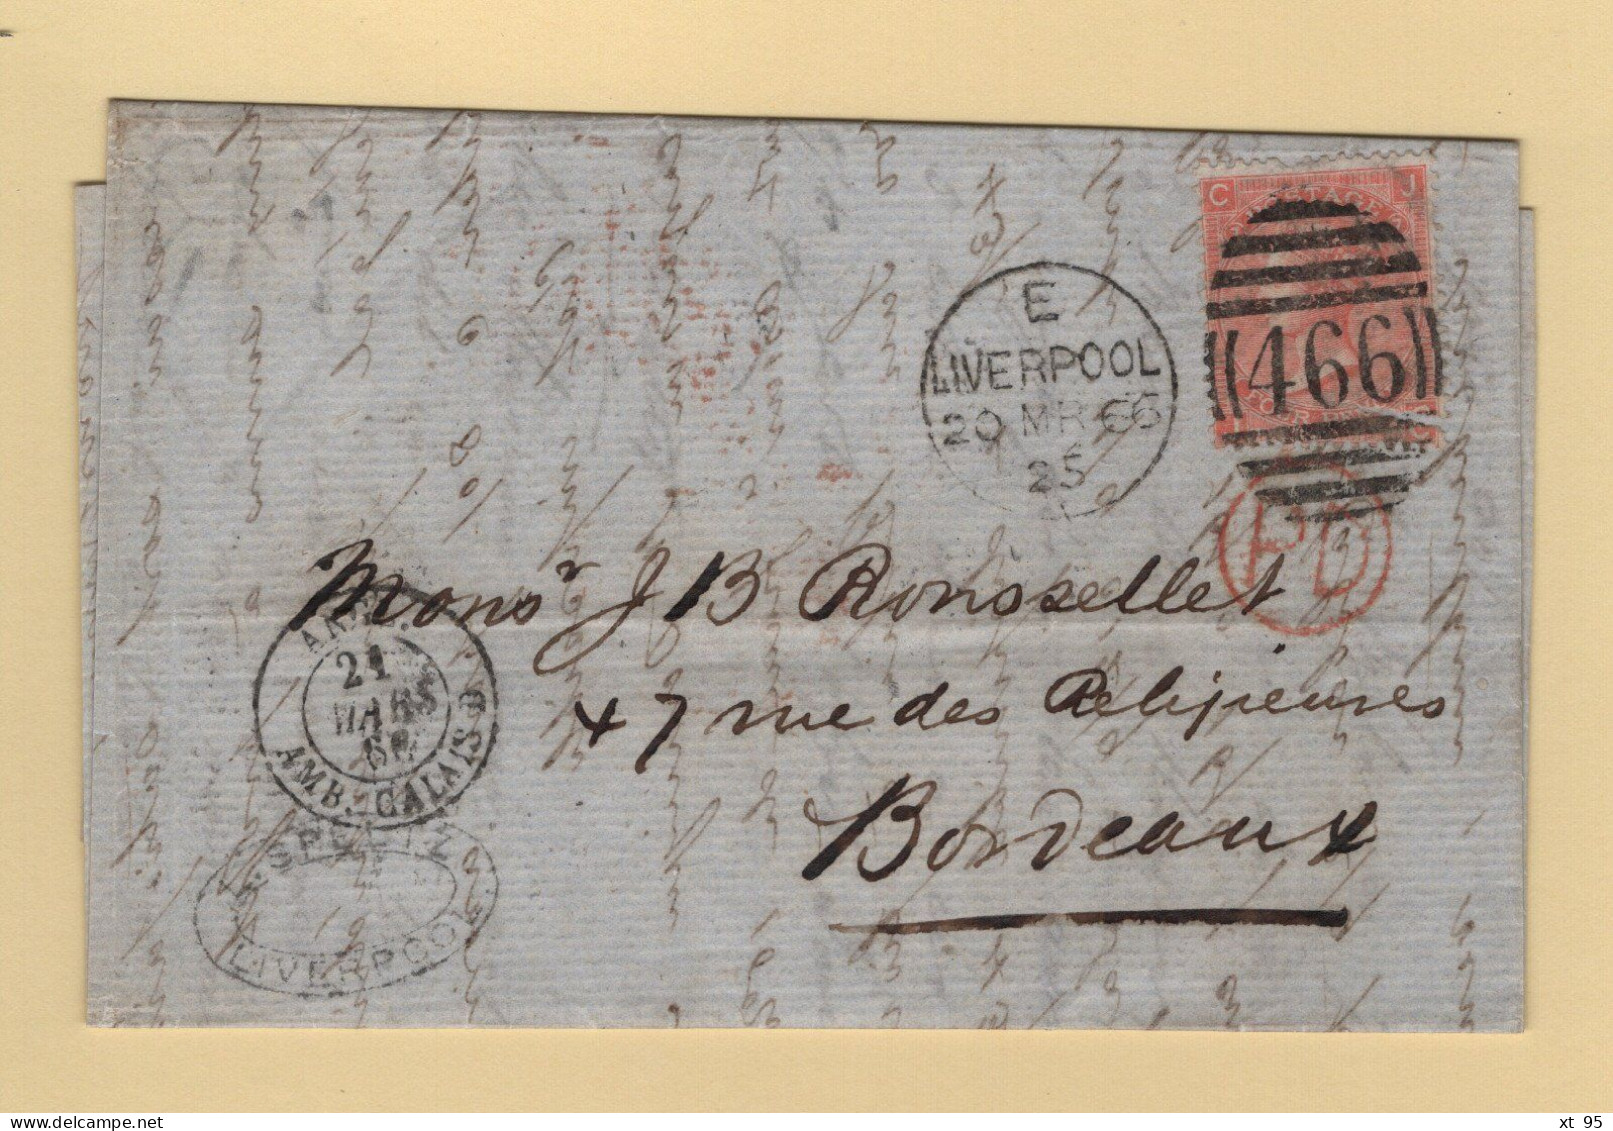 Liverpoool - 466 - 1866 - Destination Bordeaux Entree Par Calais - Lettres & Documents